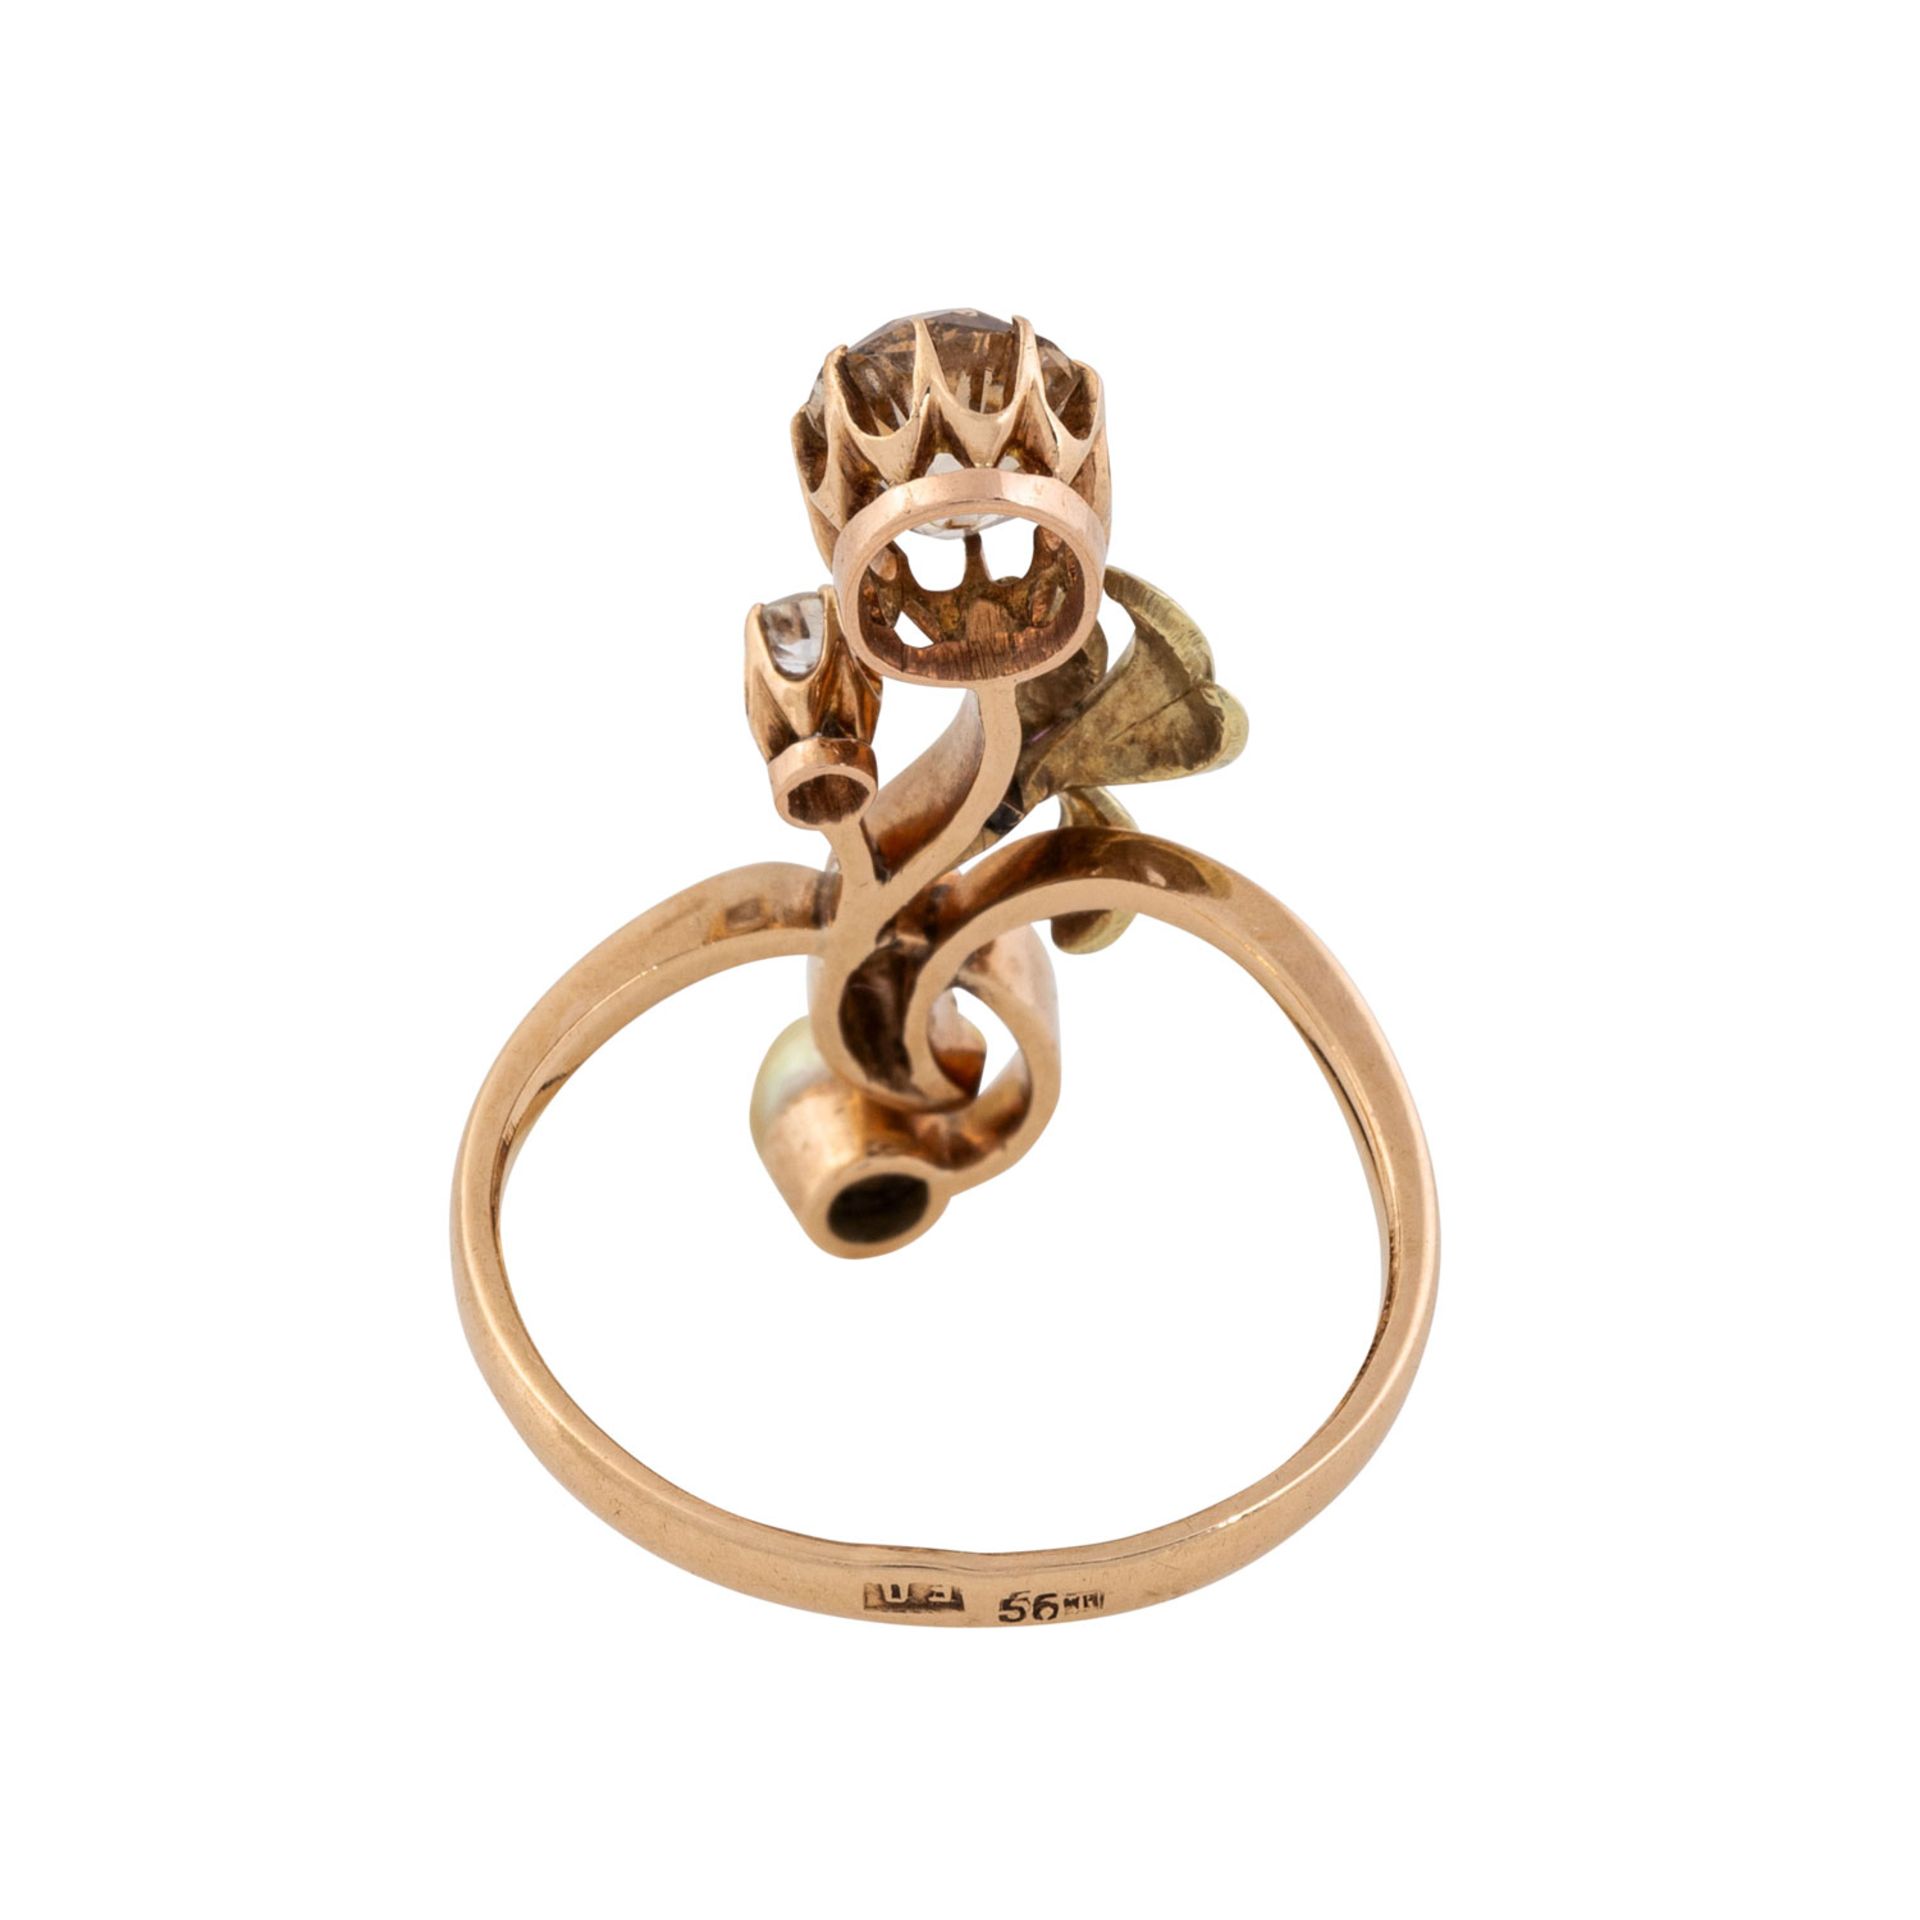 Jugendstil seltener Ring mit Altschliffdiamant von ca. 0,9 ct, - Image 3 of 4